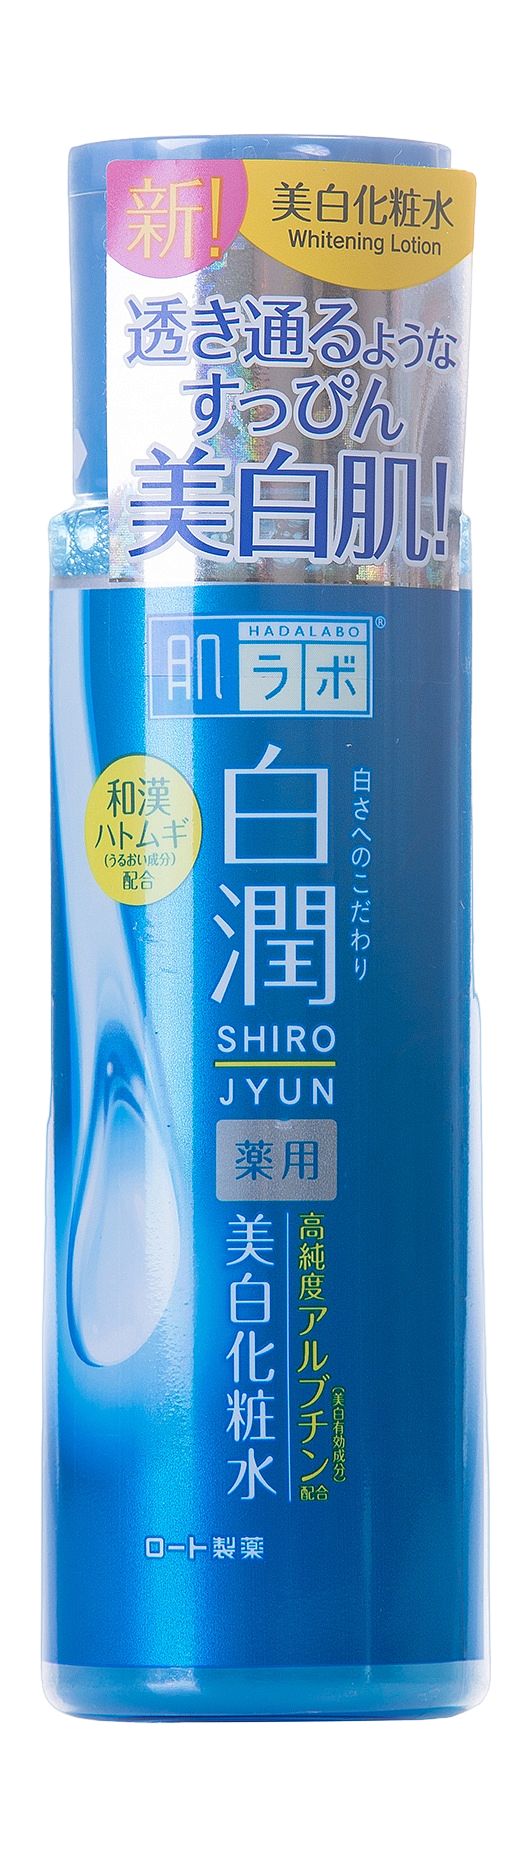 Лосьон для лица, осветляющий пигментацию Shirojyun Whitening Lotion